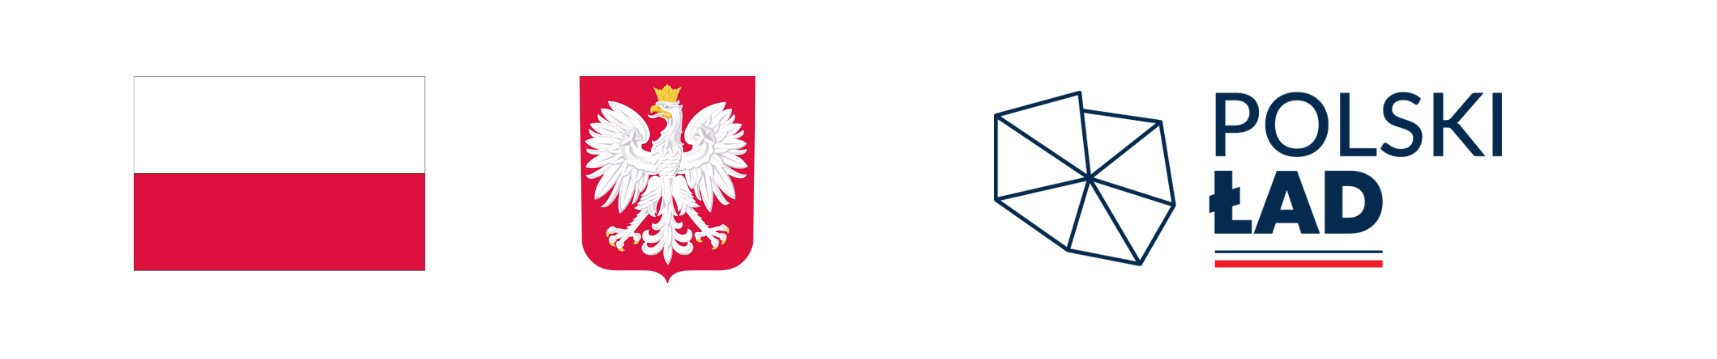 Na zdjęciu znajdują się trzy logotypy: po lewej stronie flaga Polski z białym i czerwonym poziomym pasem, pośrodku herb Polski z białym orłem na czerwonym tle, z prawej napis "POLSKI ŁAD" w czarnym kolorze obok grafiki przypominającej diament.